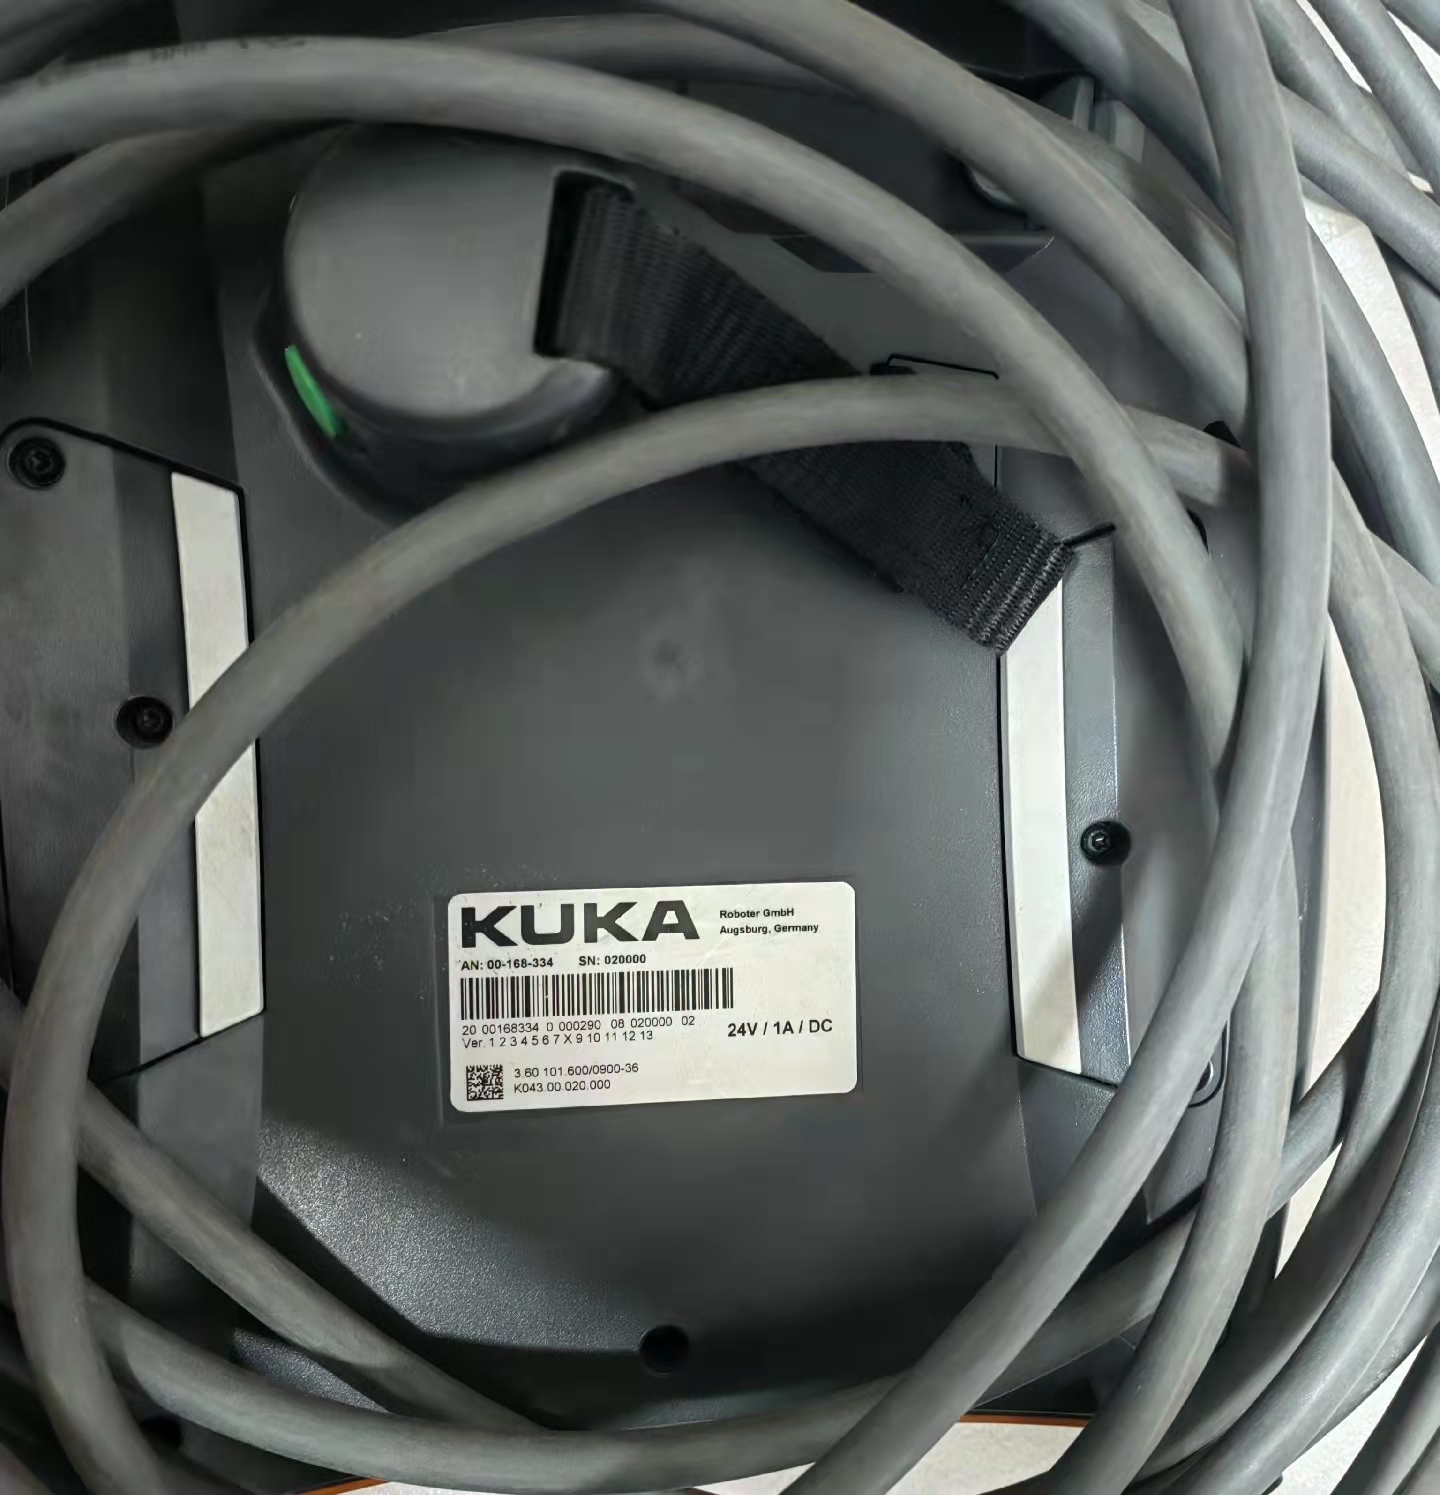 KUKA Smartpad 00-168-334